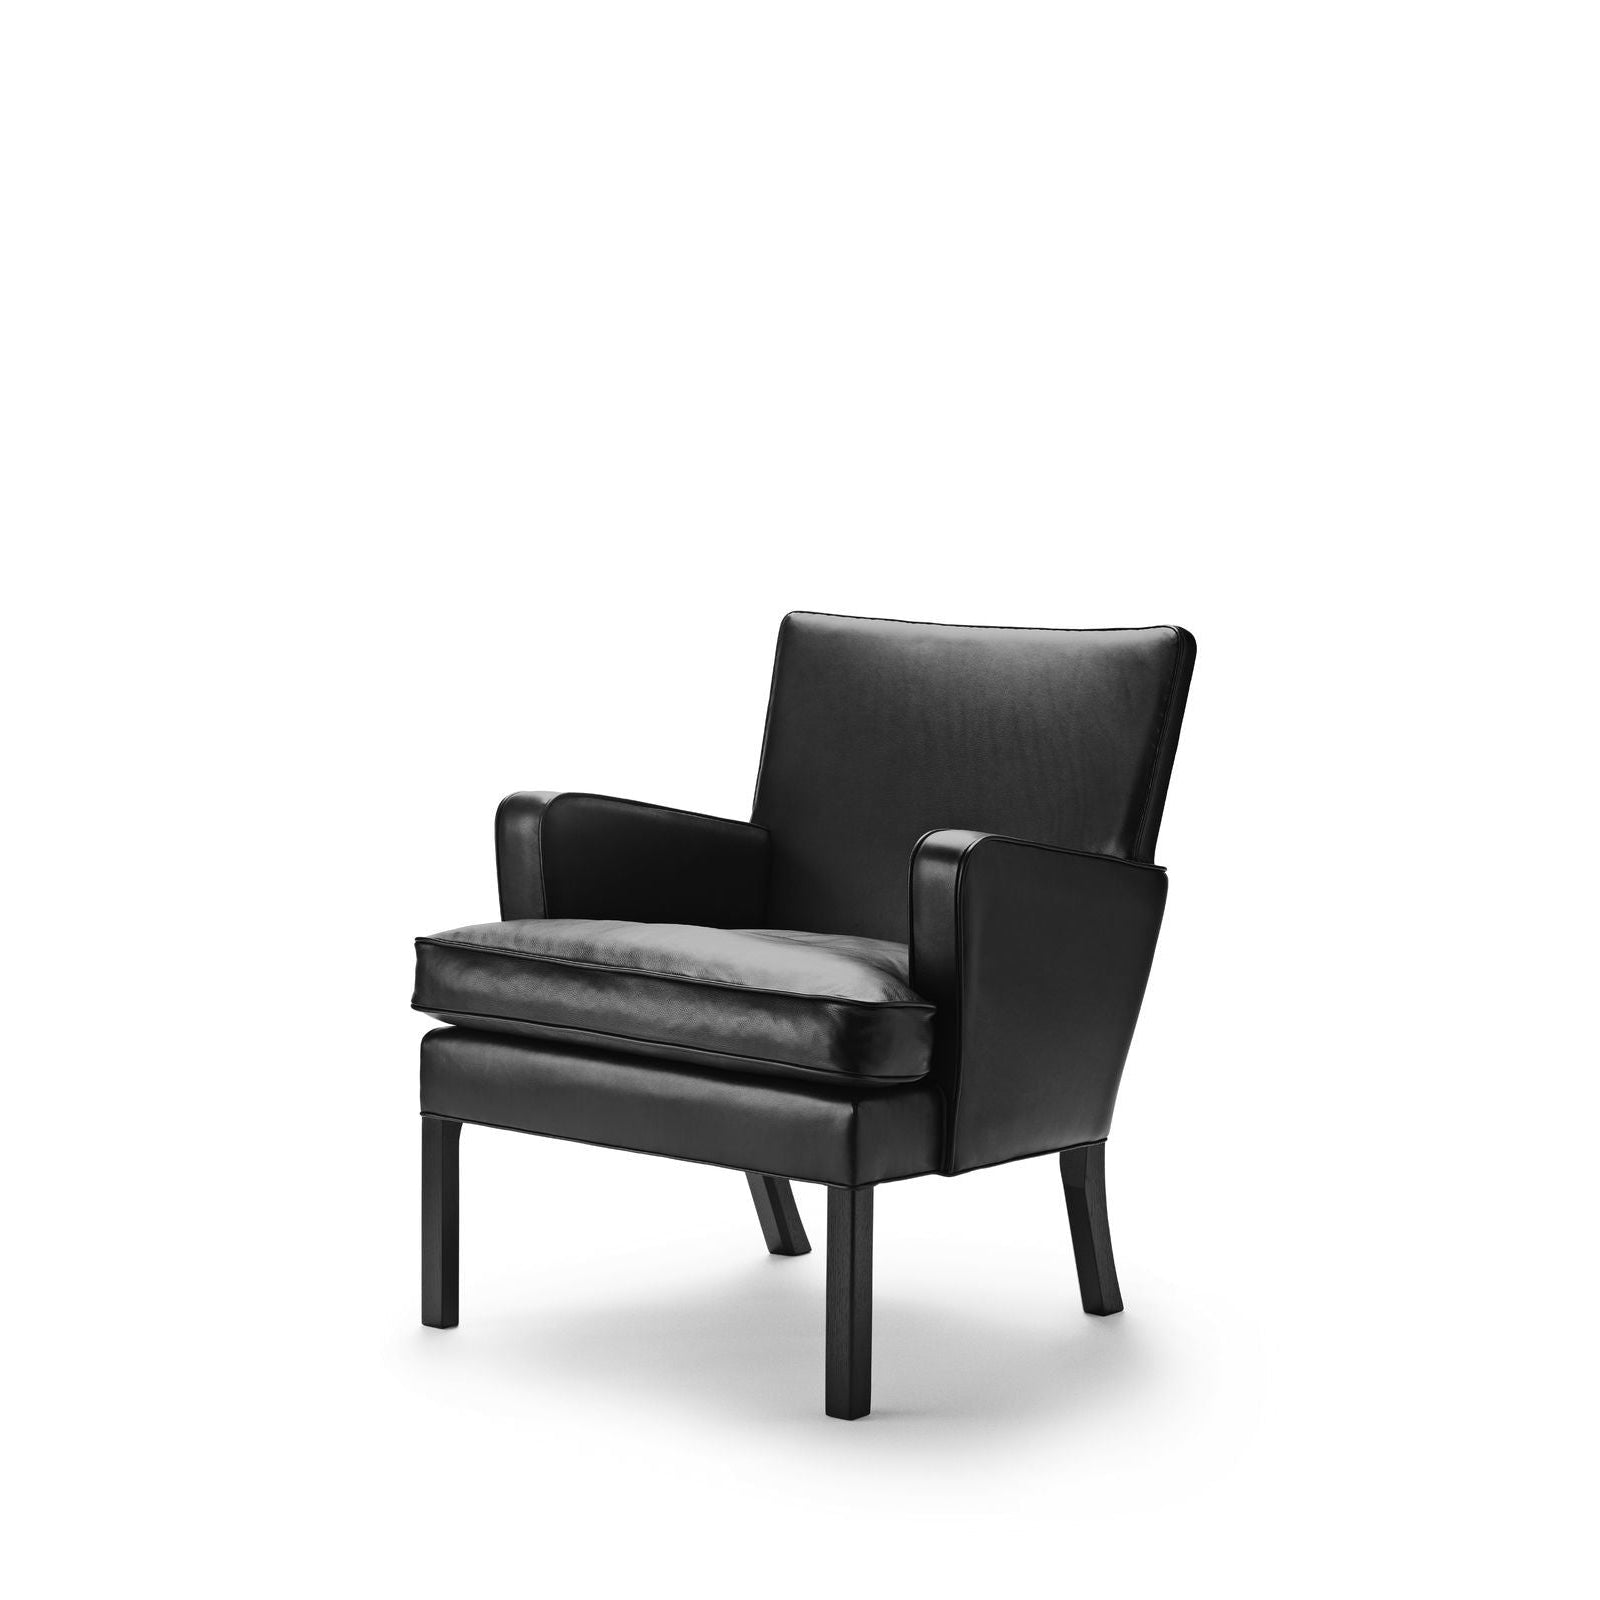 Carl Hansen Kk53130 Easy Chair, Black Oak/Black Leather